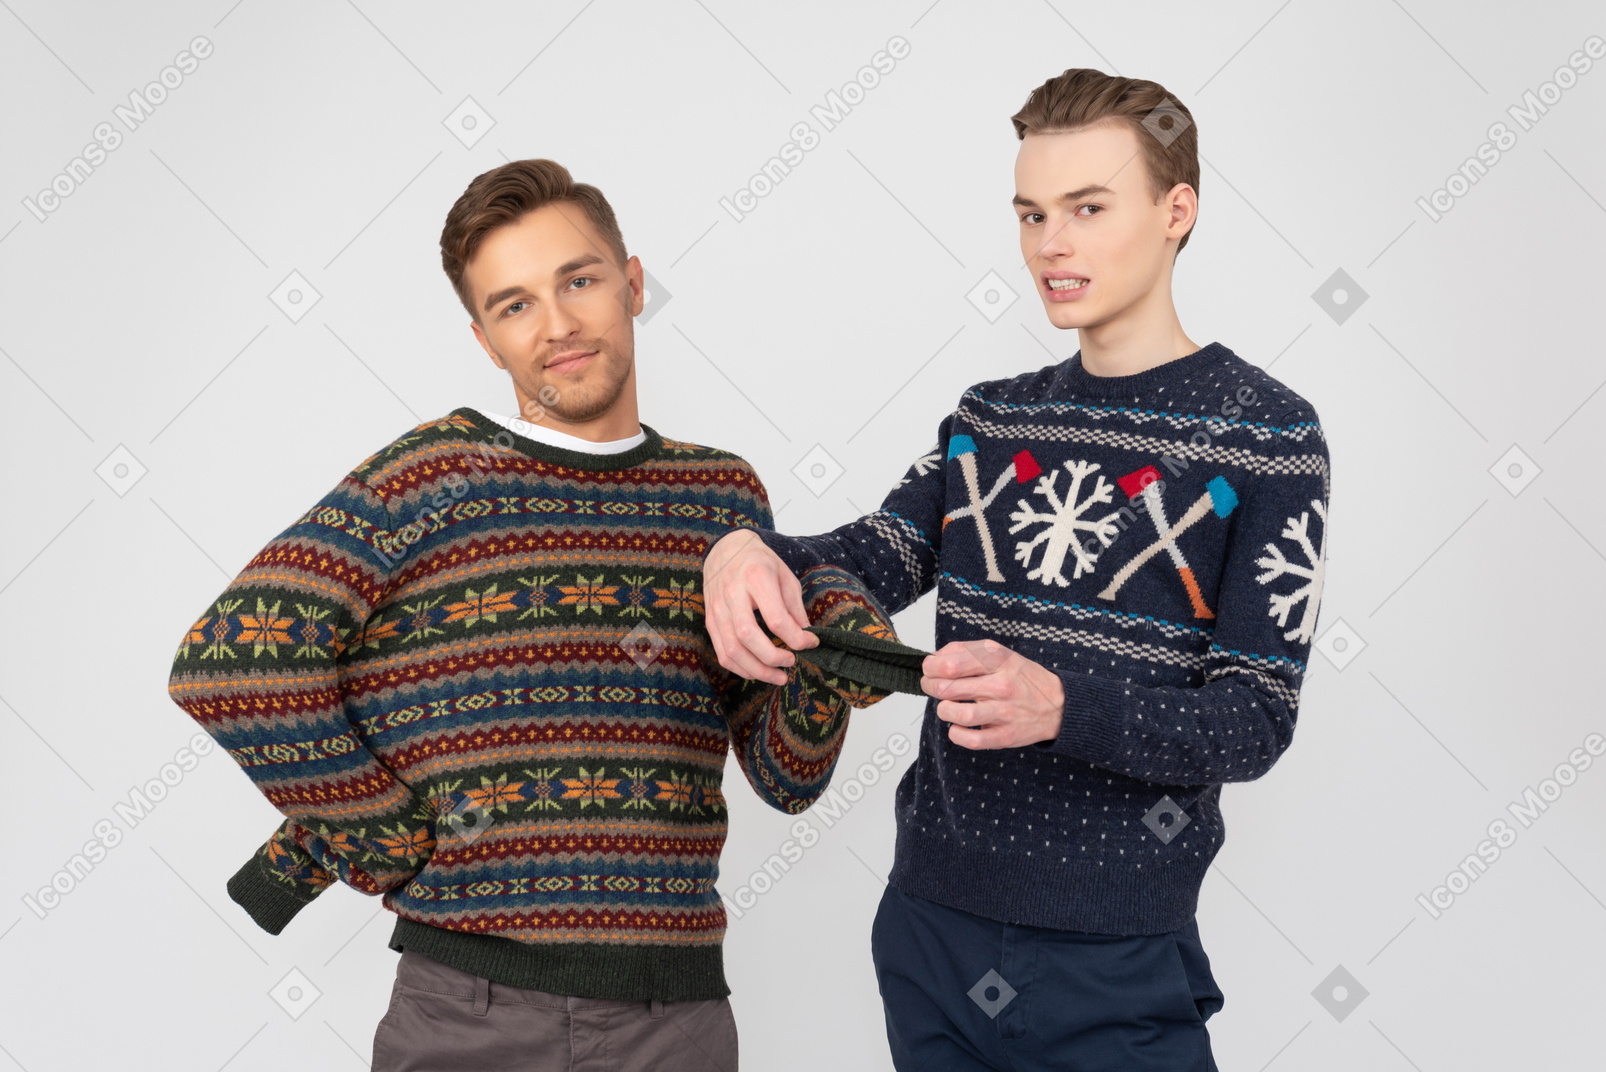 Uomo che cerca di aggiustare la manica del maglione di suo fratello